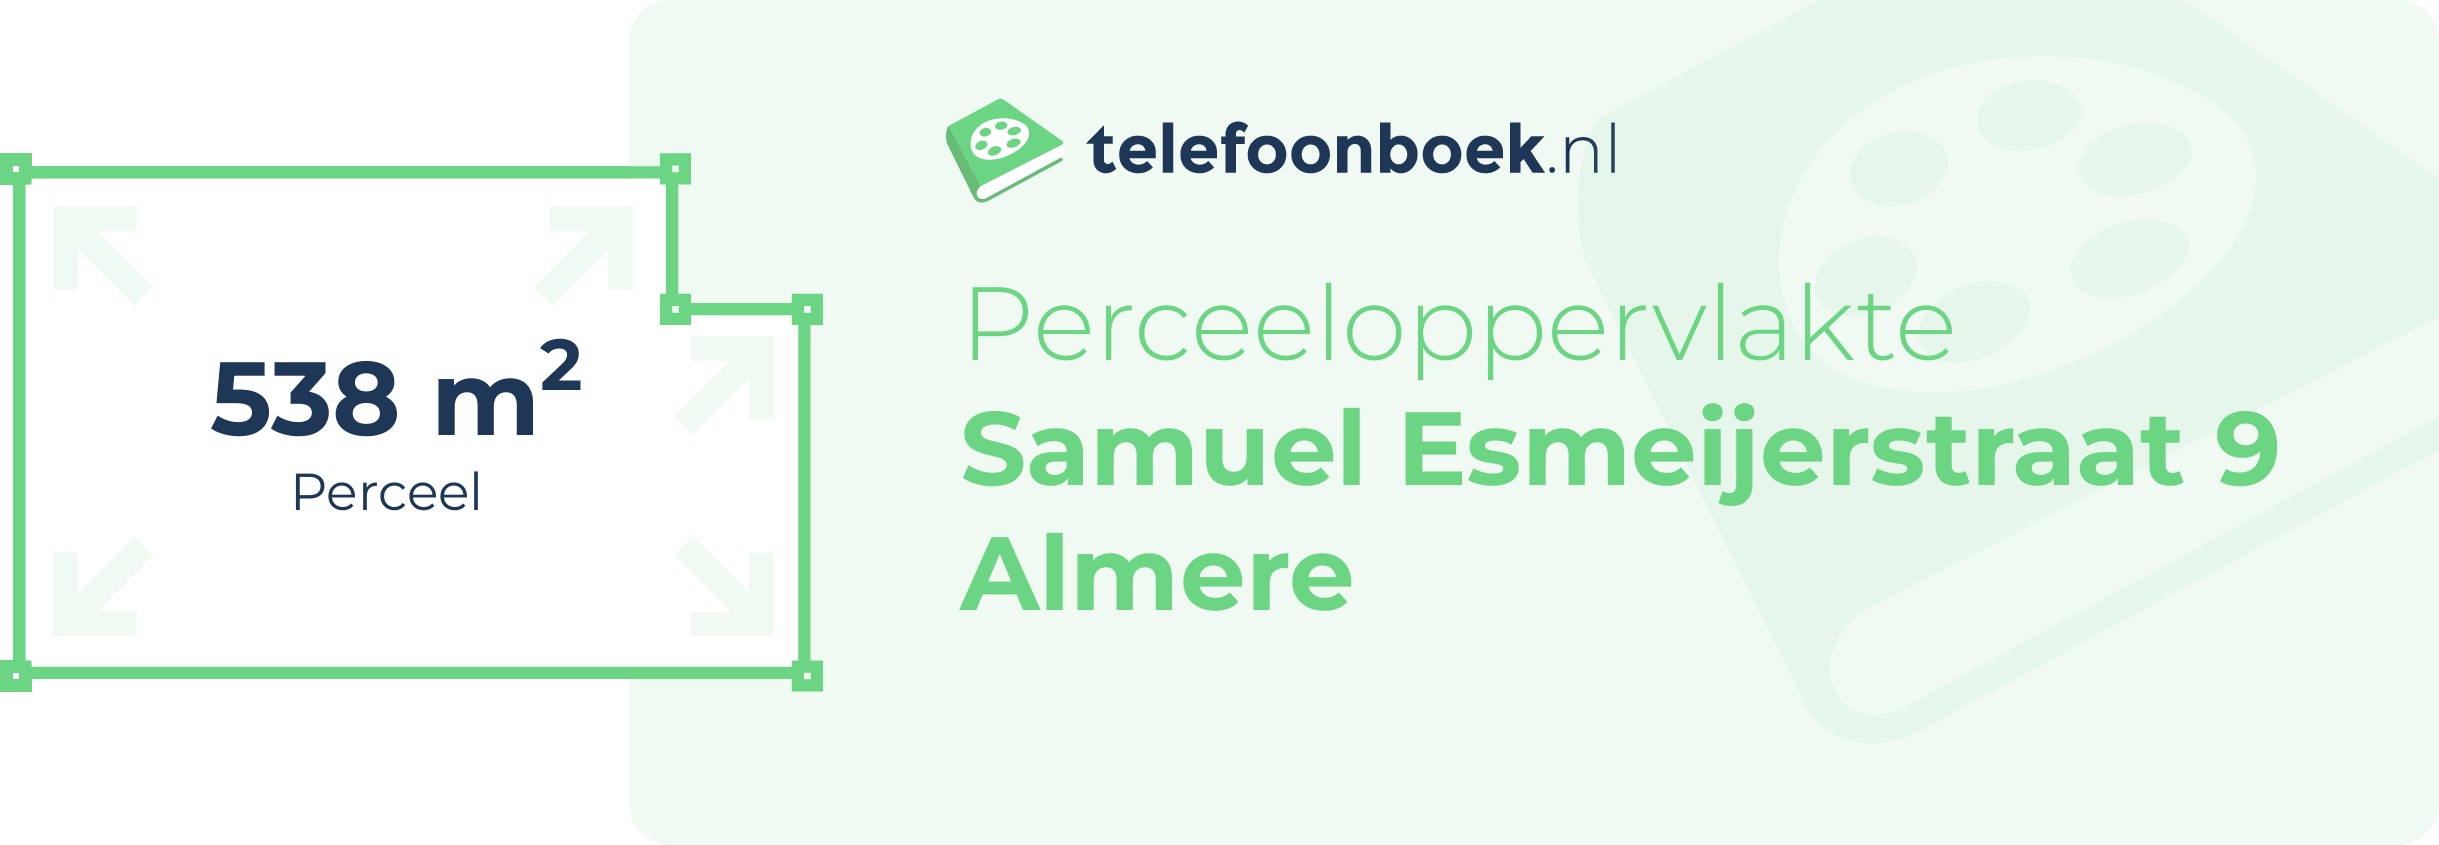 Perceeloppervlakte Samuel Esmeijerstraat 9 Almere